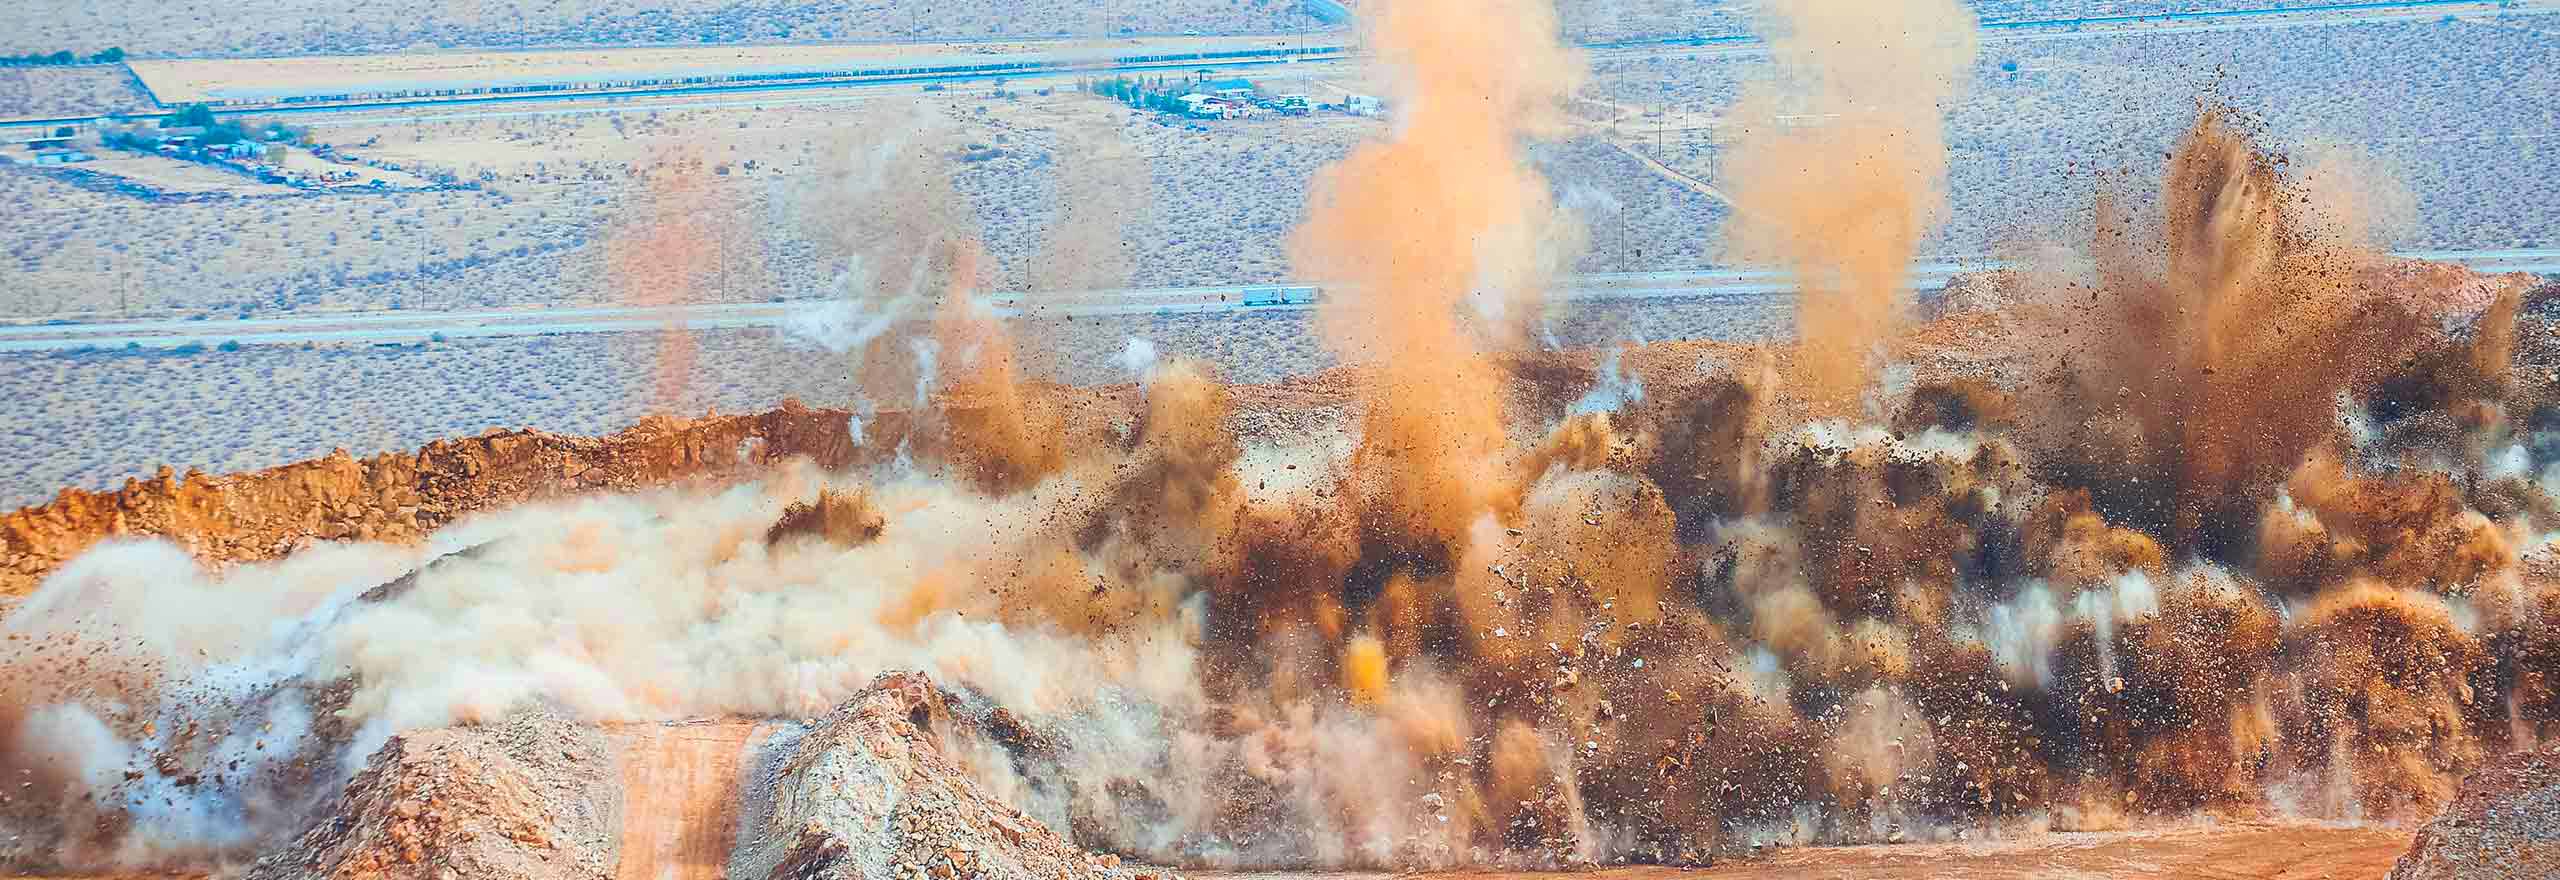 miniera a cielo aperto immortalata durante un'esplosione